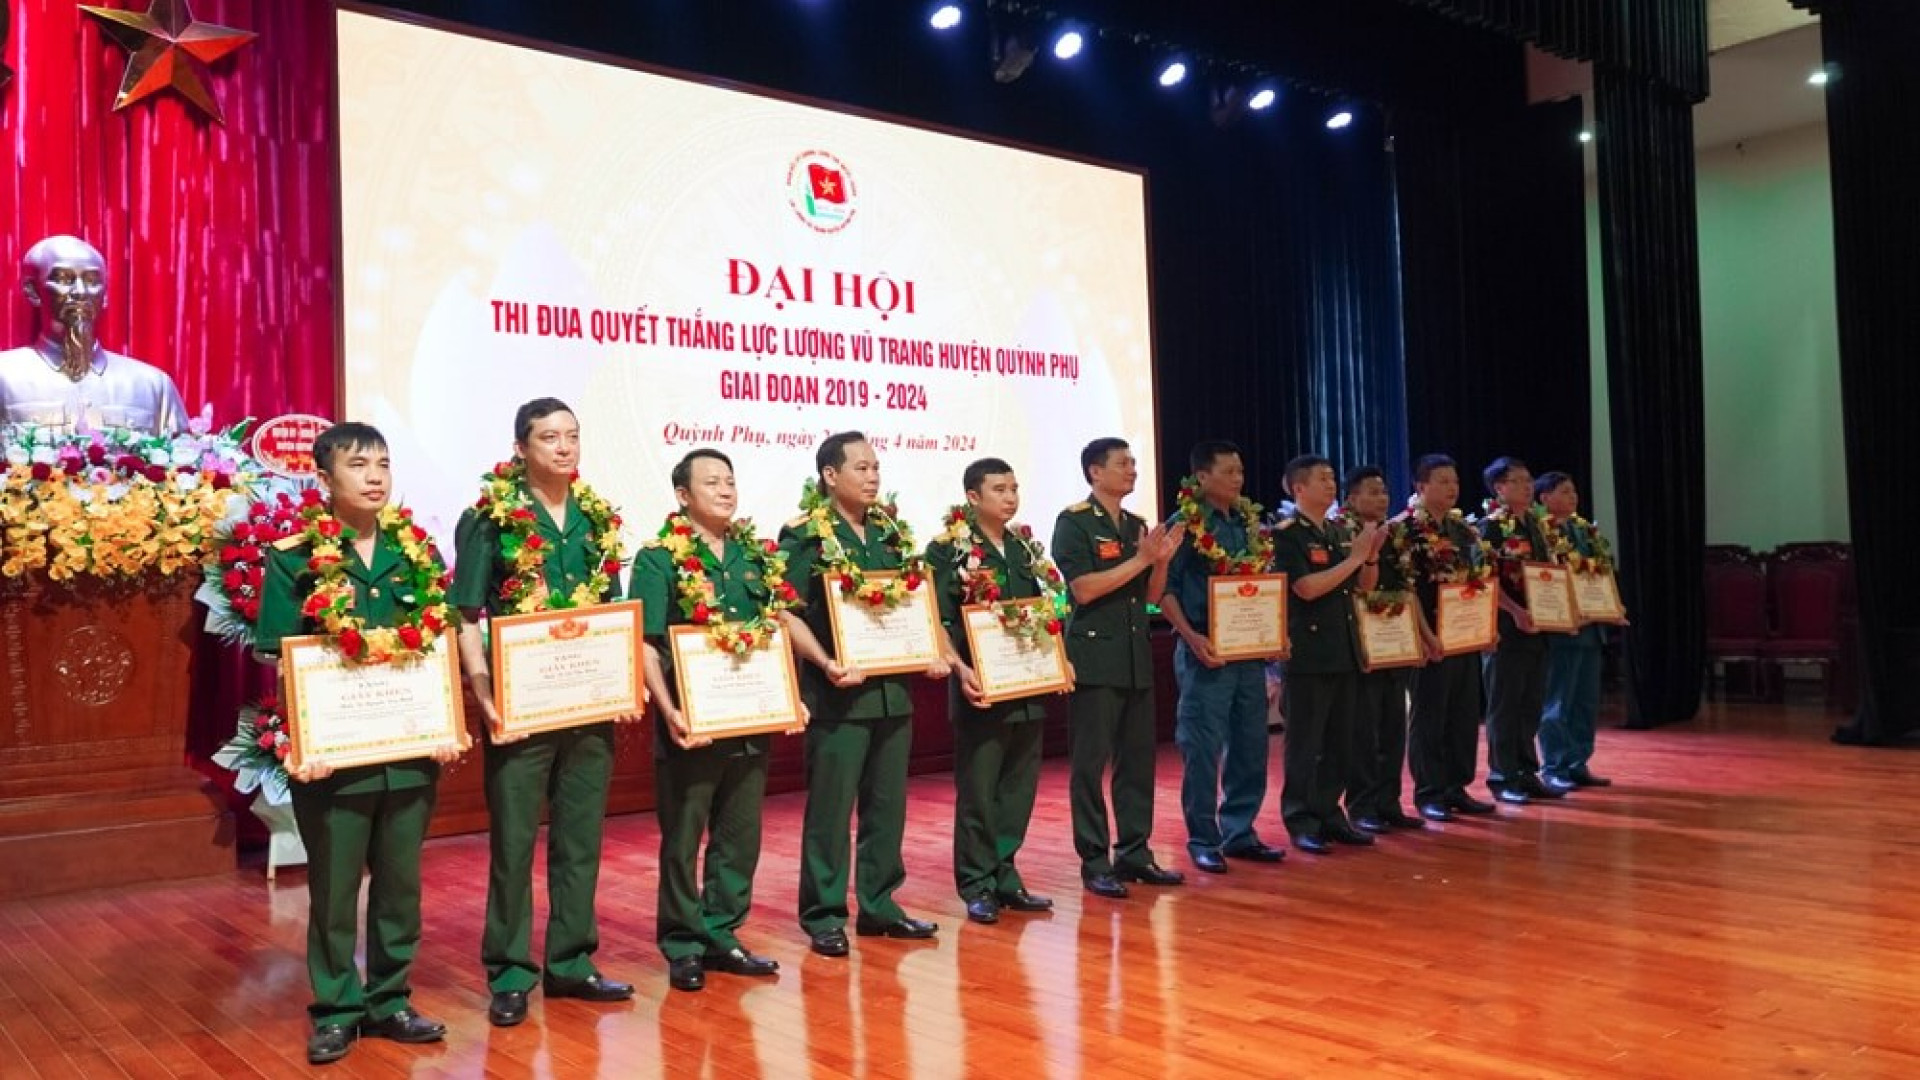 Đại hội thi đua Quyết thắng LLVT huyện Quỳnh Phụ giai đoạn 2019-2024